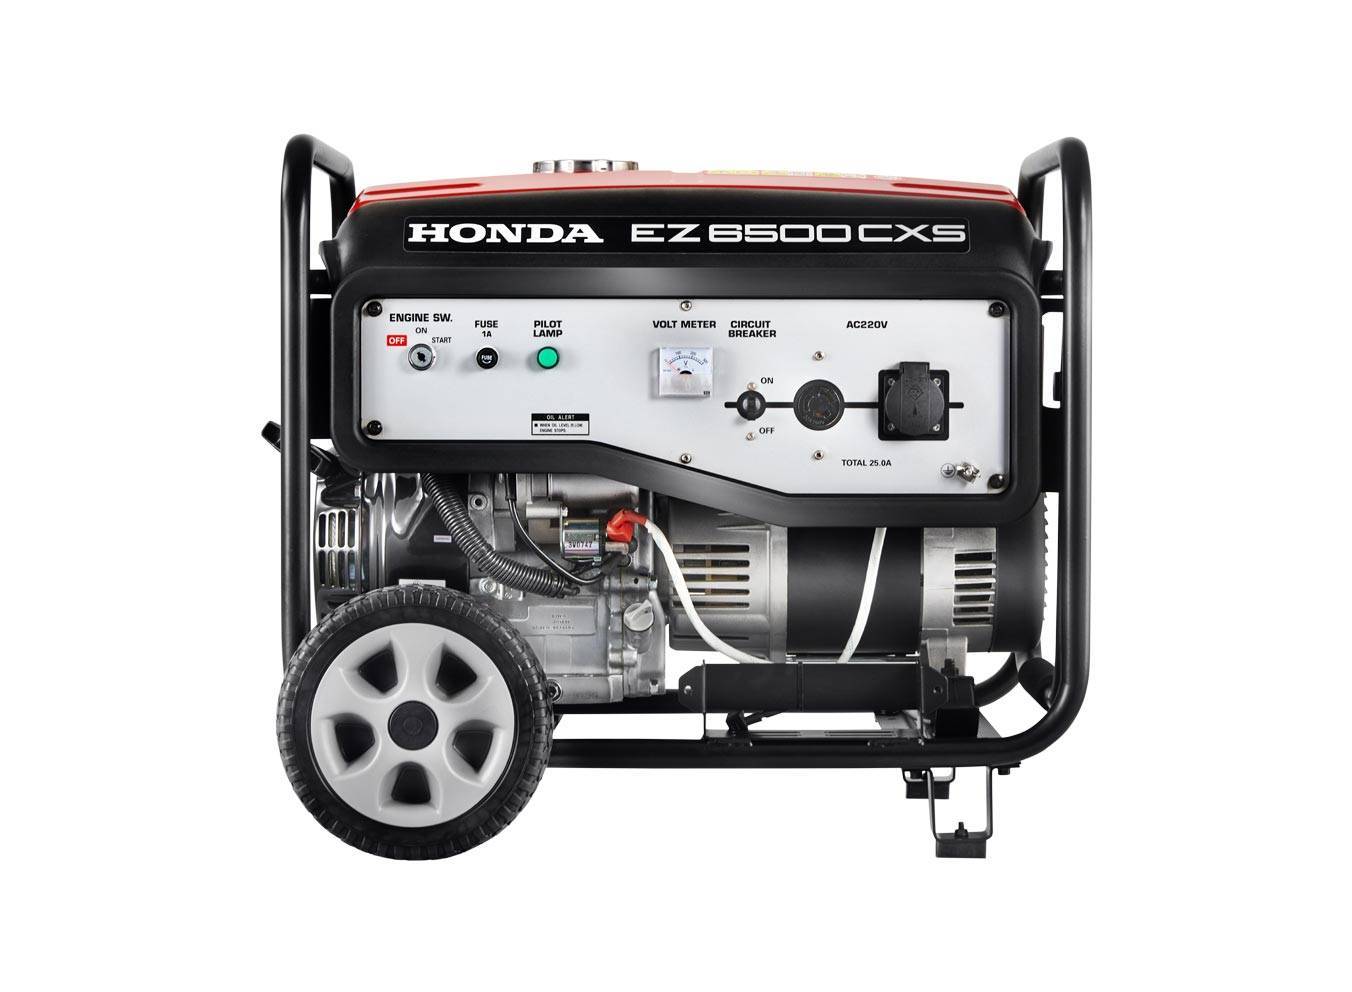  Gerador Honda EZ6500CXS 127V 6500W 6,5KVA Monofásico 13HP